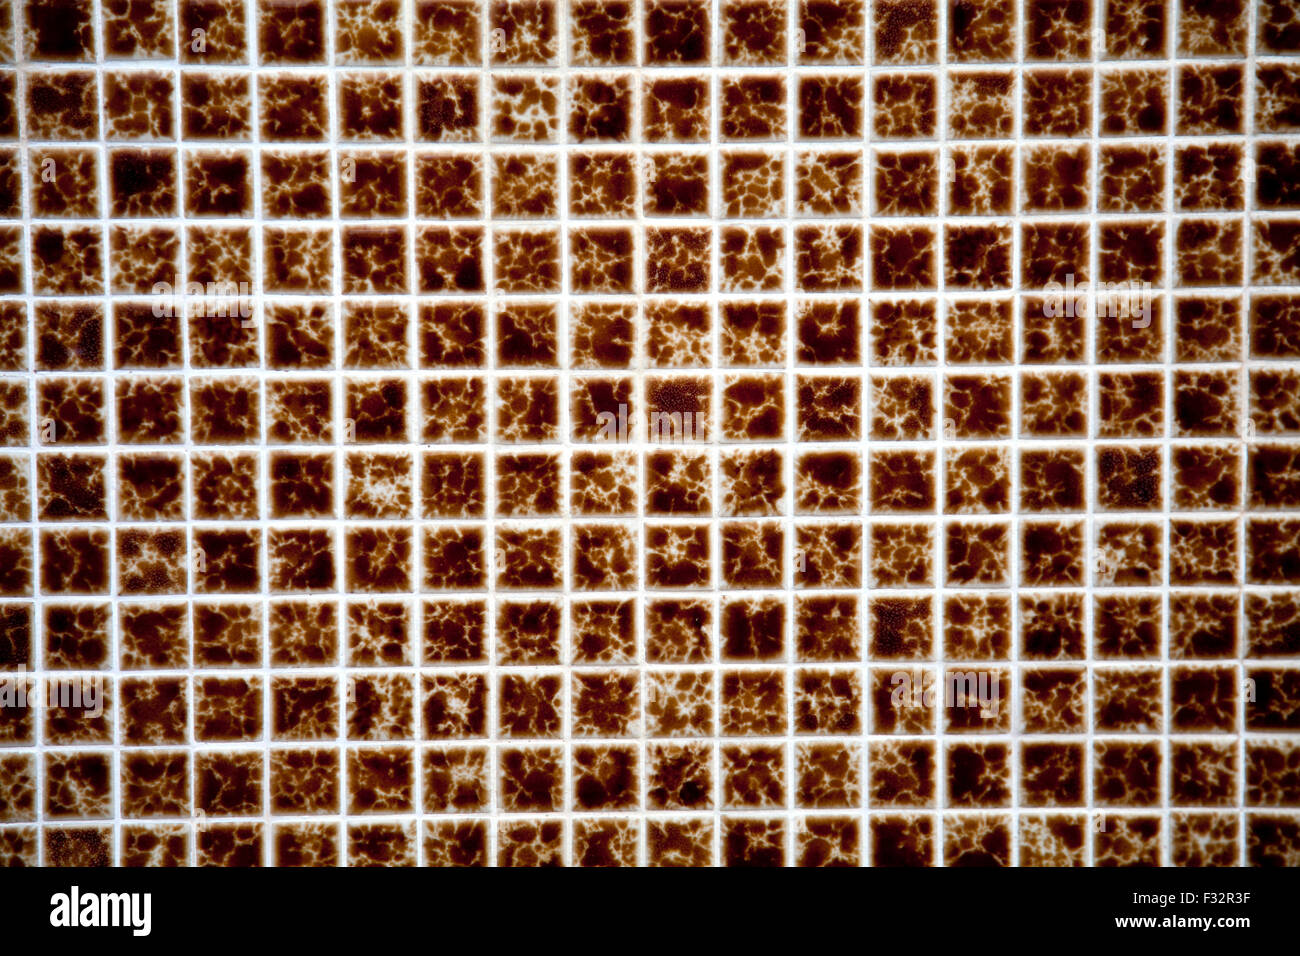 Brown ceramic tiles. Portugal. Stock Photo